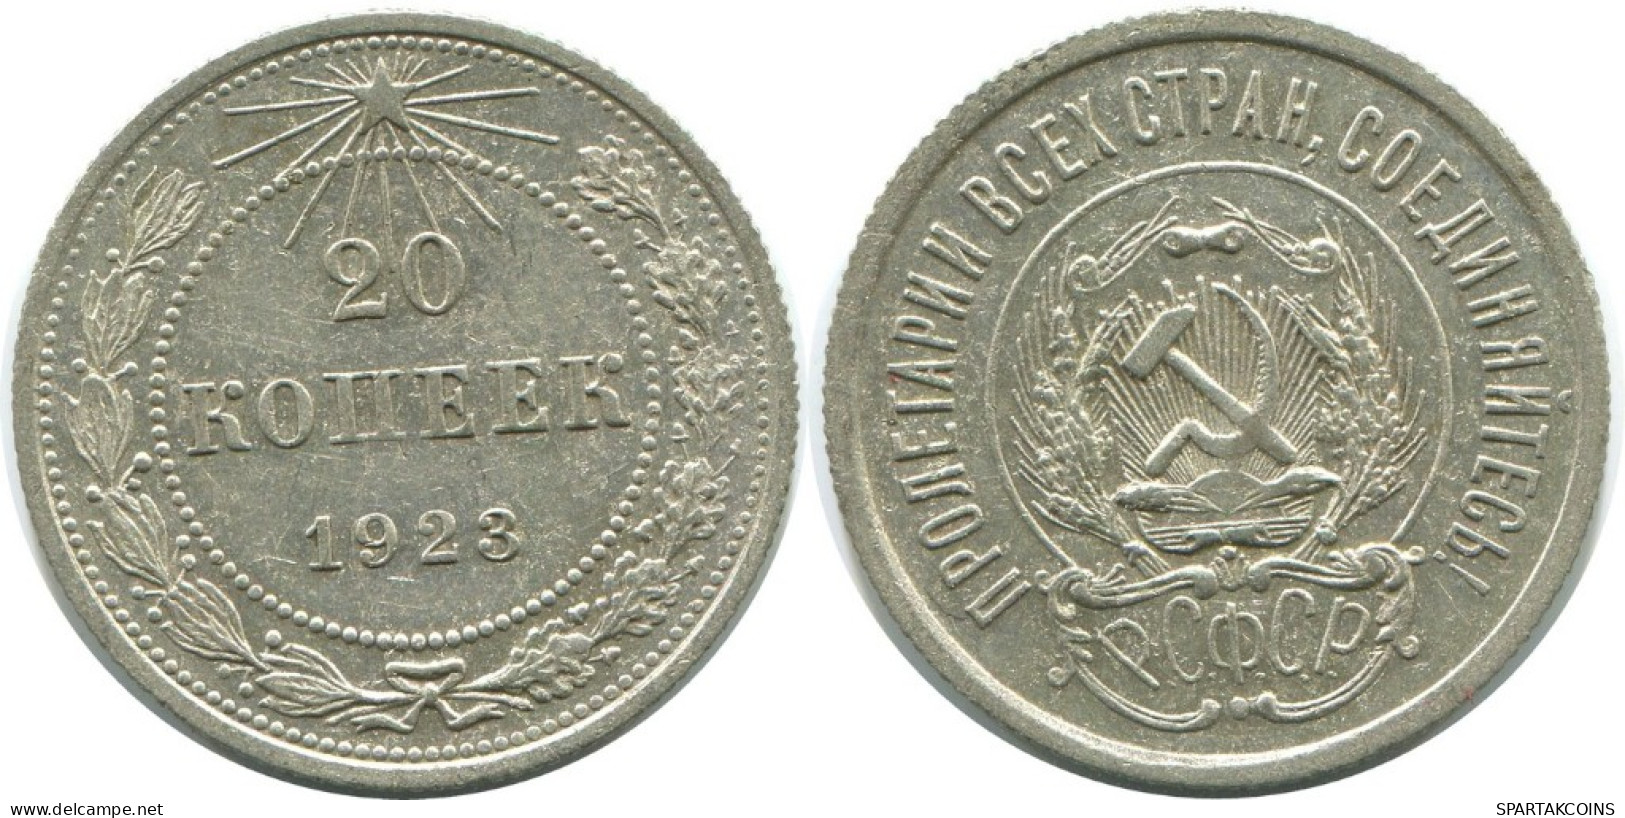 20 KOPEKS 1923 RUSSIA RSFSR SILVER Coin HIGH GRADE #AF554.4.U.A - Rusland